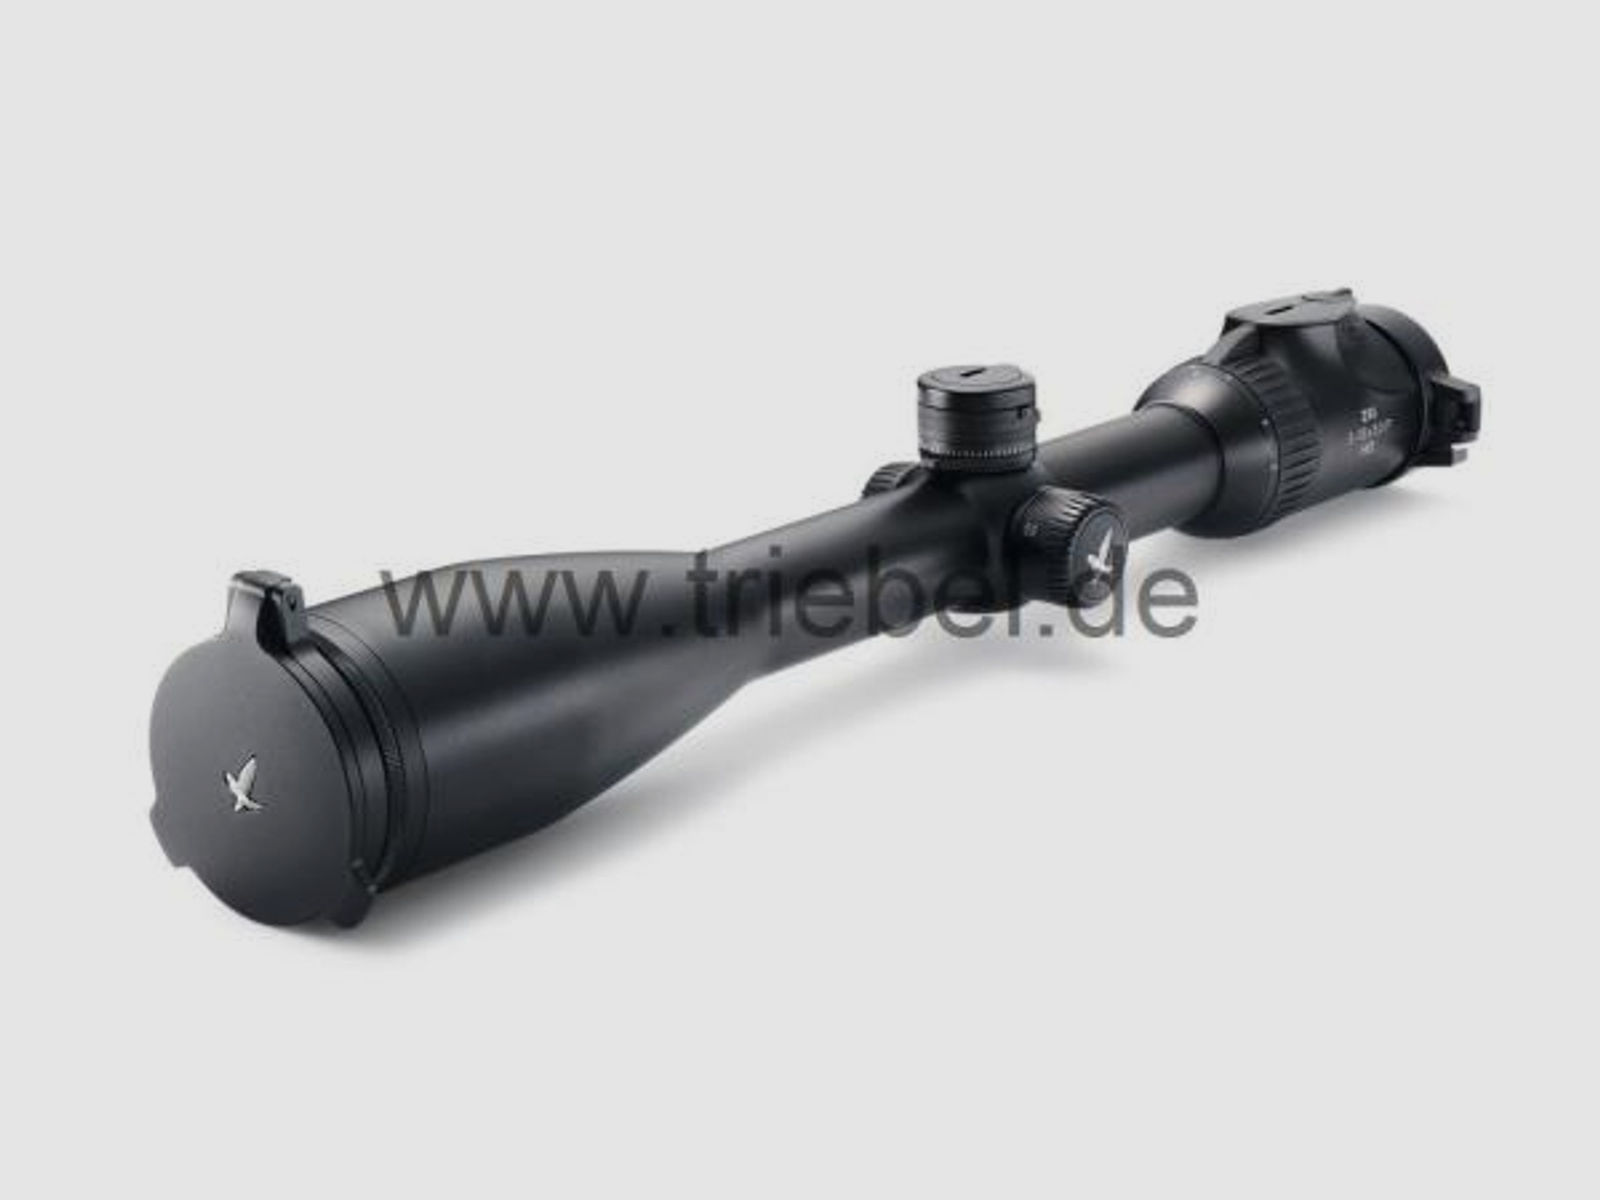 SWAROVSKI Zubehör für Zielfernrohre Objektivdeckel 56 mm SLP-O-56 f. Z8i, Z6(i), Z5, Z3, X5(i)